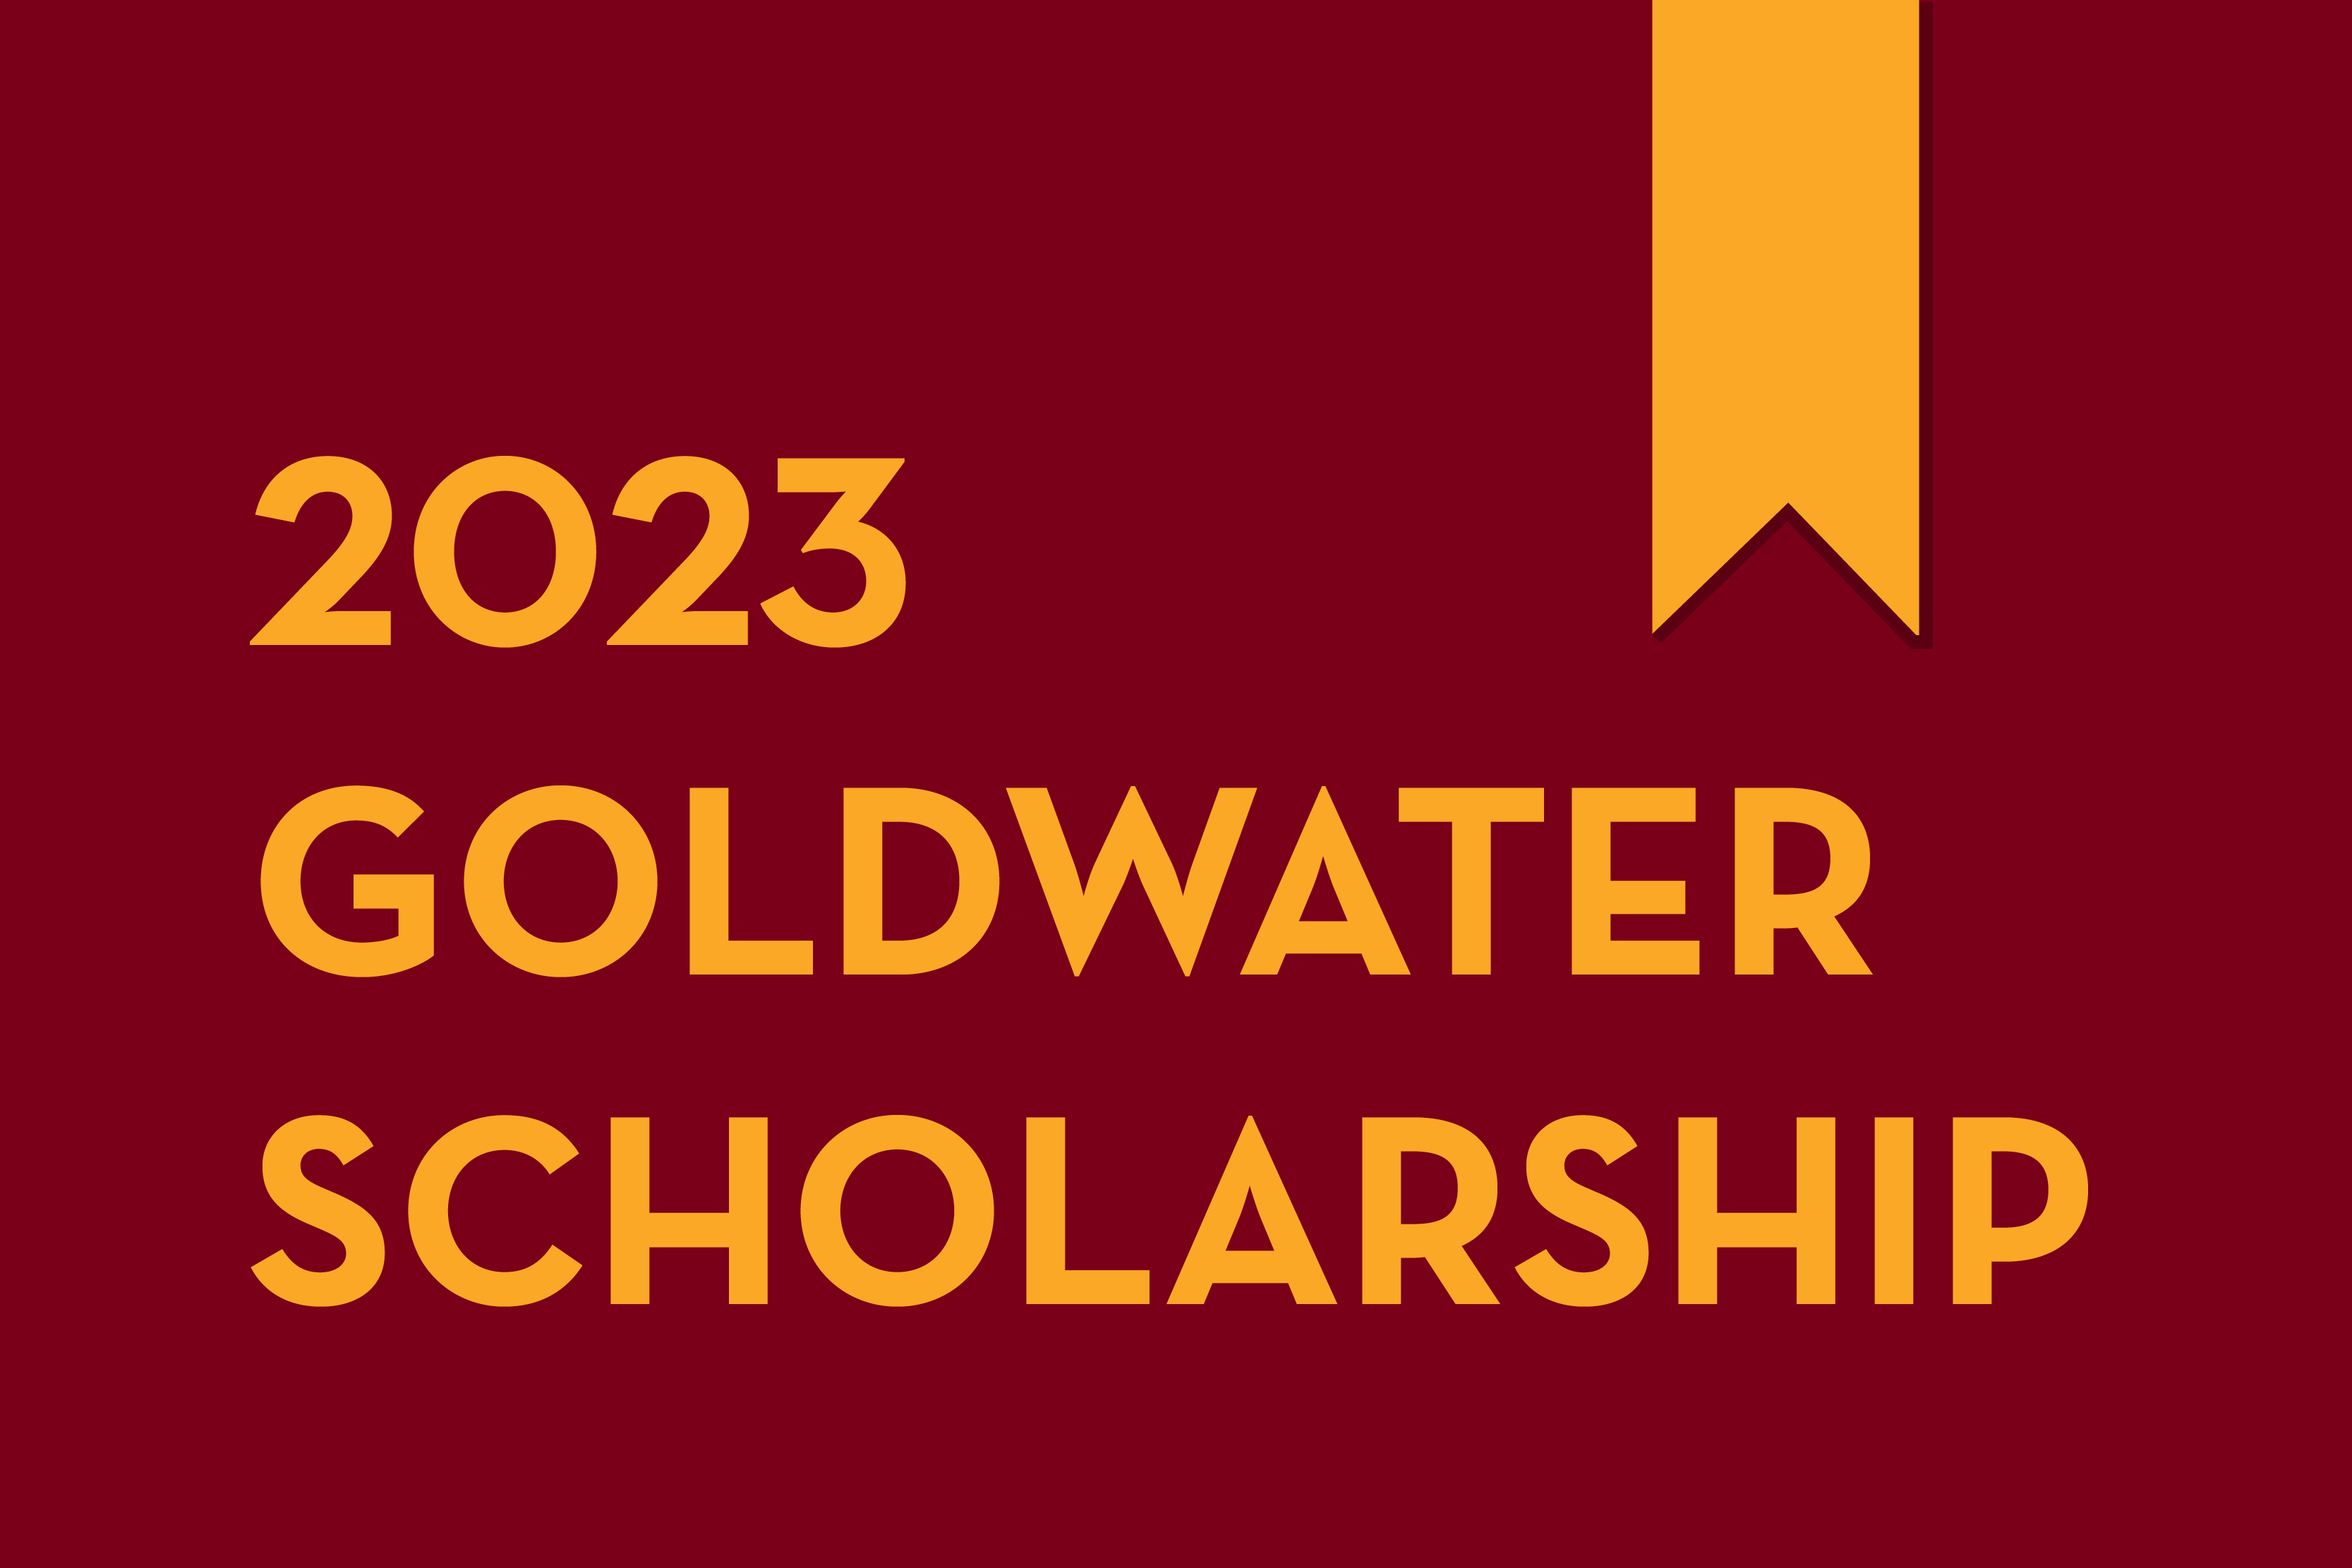 Undergraduate junior Ethan Ashbrook named a 2023 Goldwater Scholar